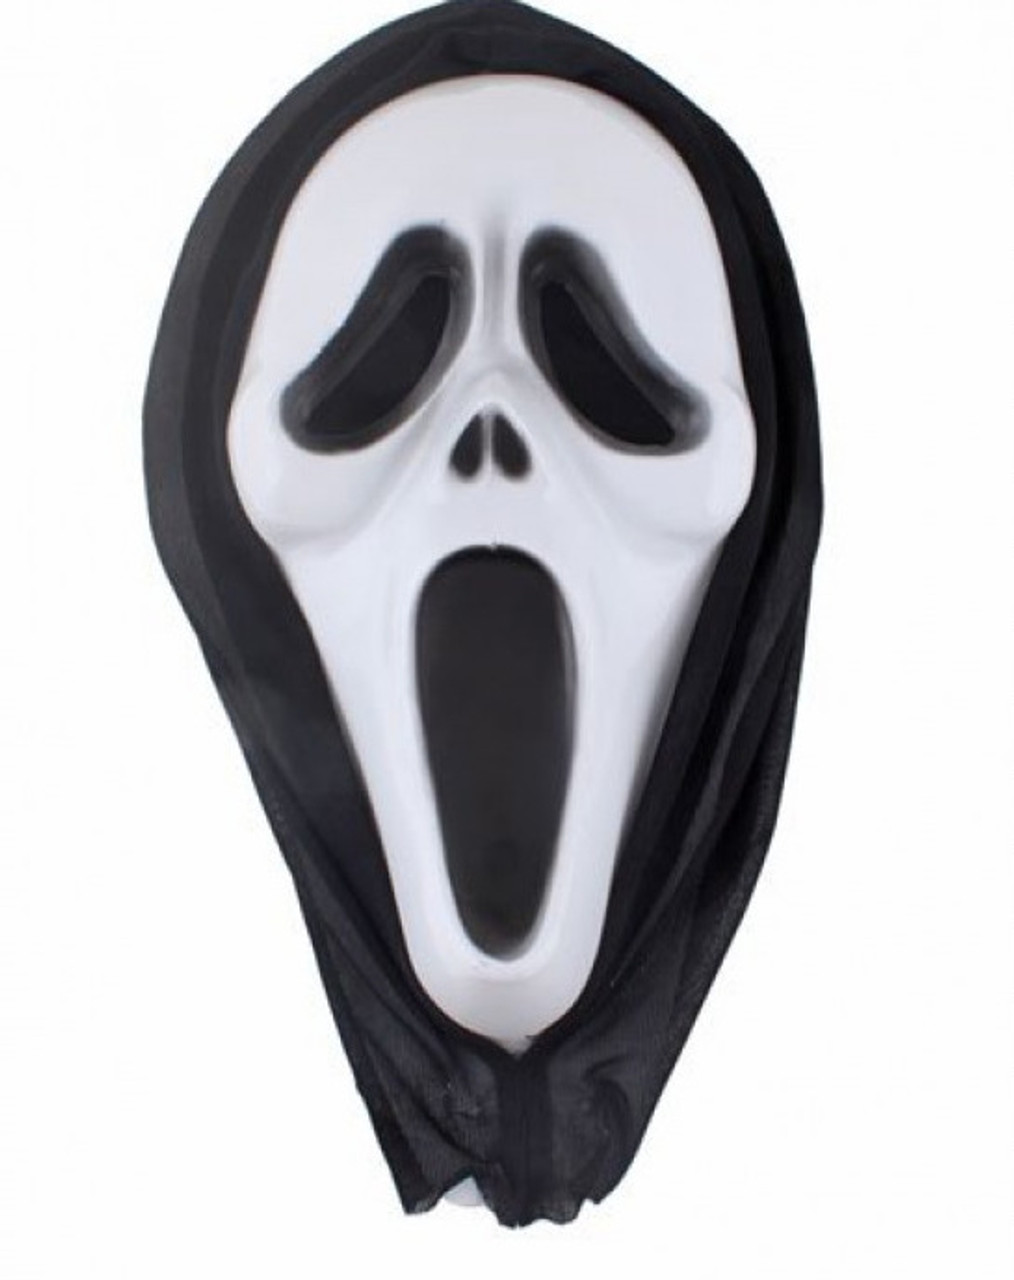 Stalker SCREAM Plastic Mask Bulk